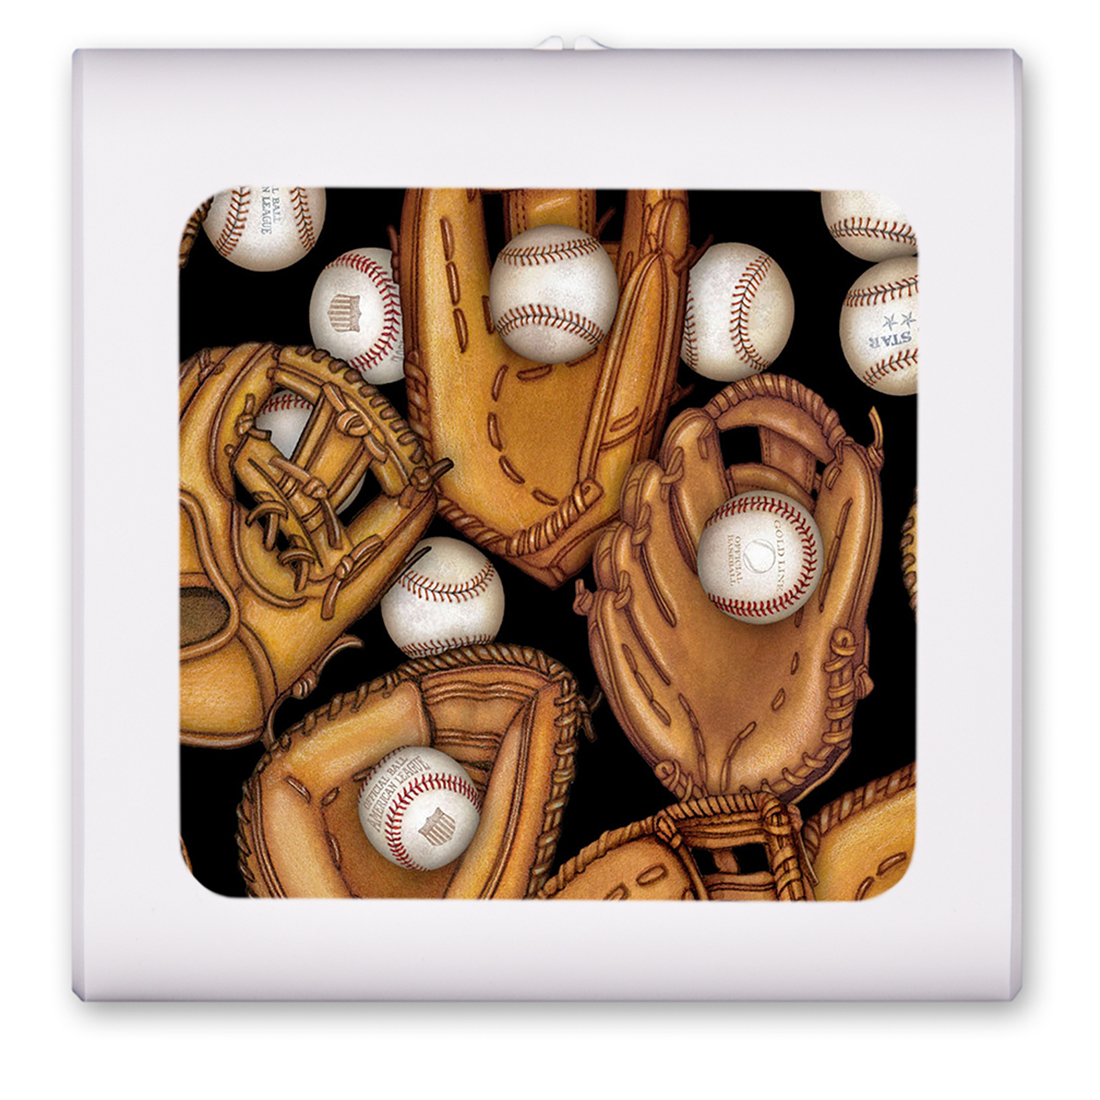 Baseball Gloves - Image by Dan Morris - #6504